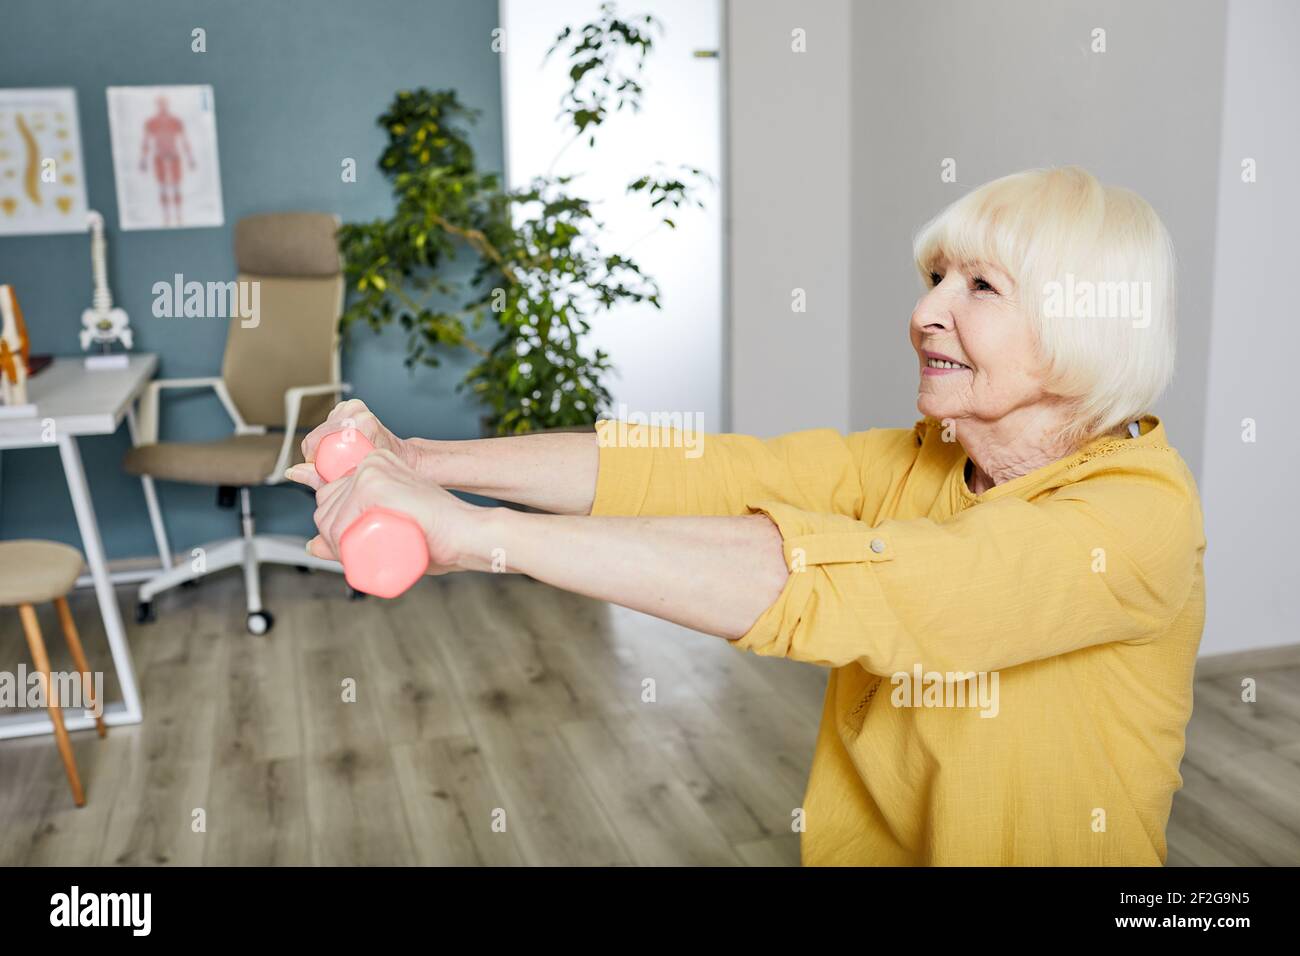 Une femme âgée lève un haltères, elle fait un exercice de traitement au centre de réadaptation Banque D'Images